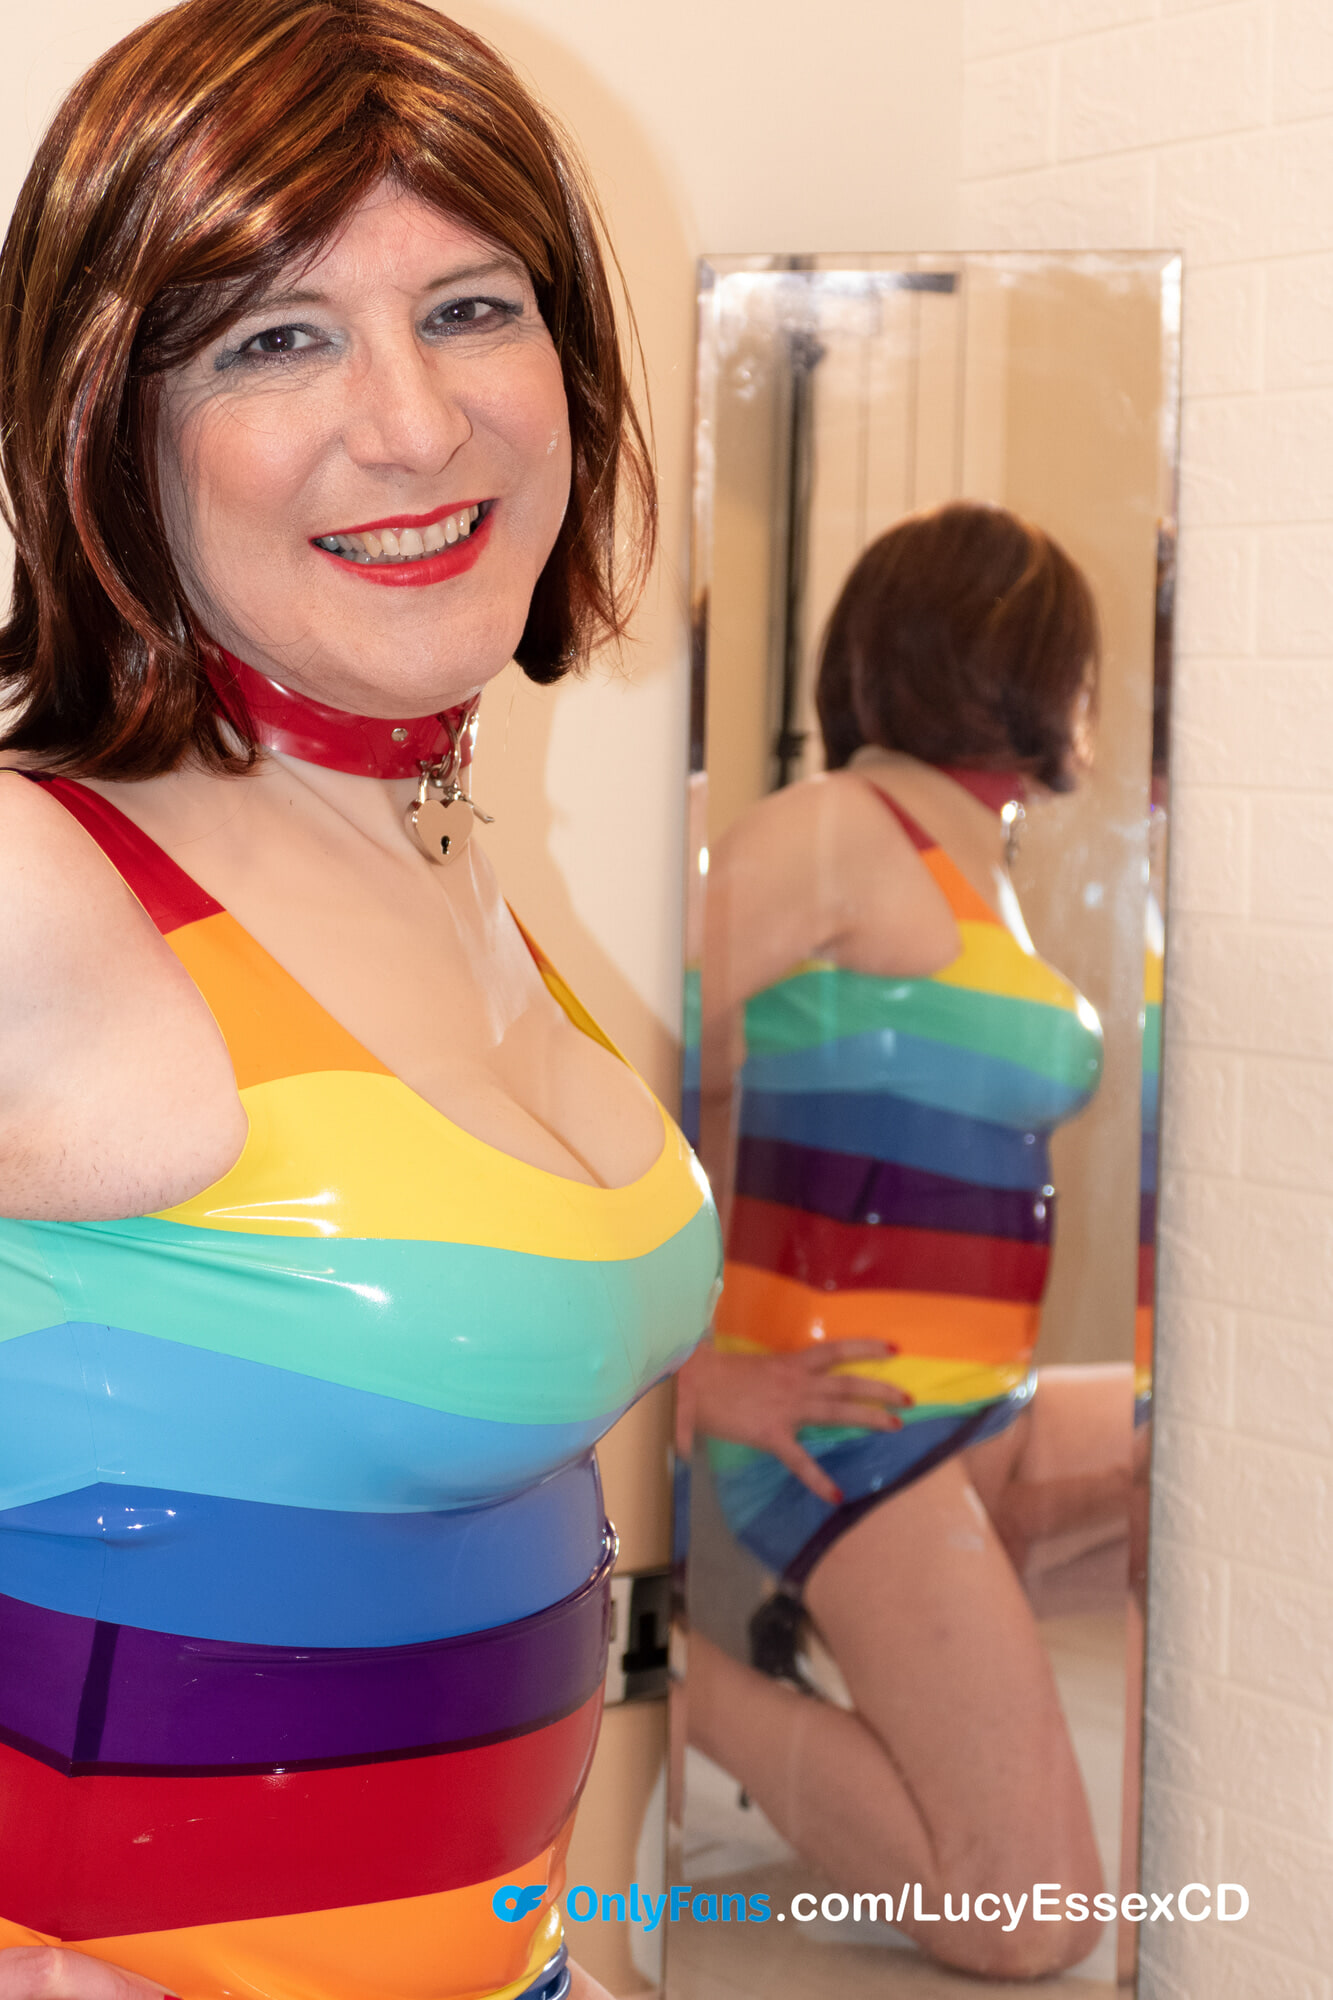 Big Cock Tgirl Lucy Essex Cd New Rainbow Latex Minidress 15 Pics